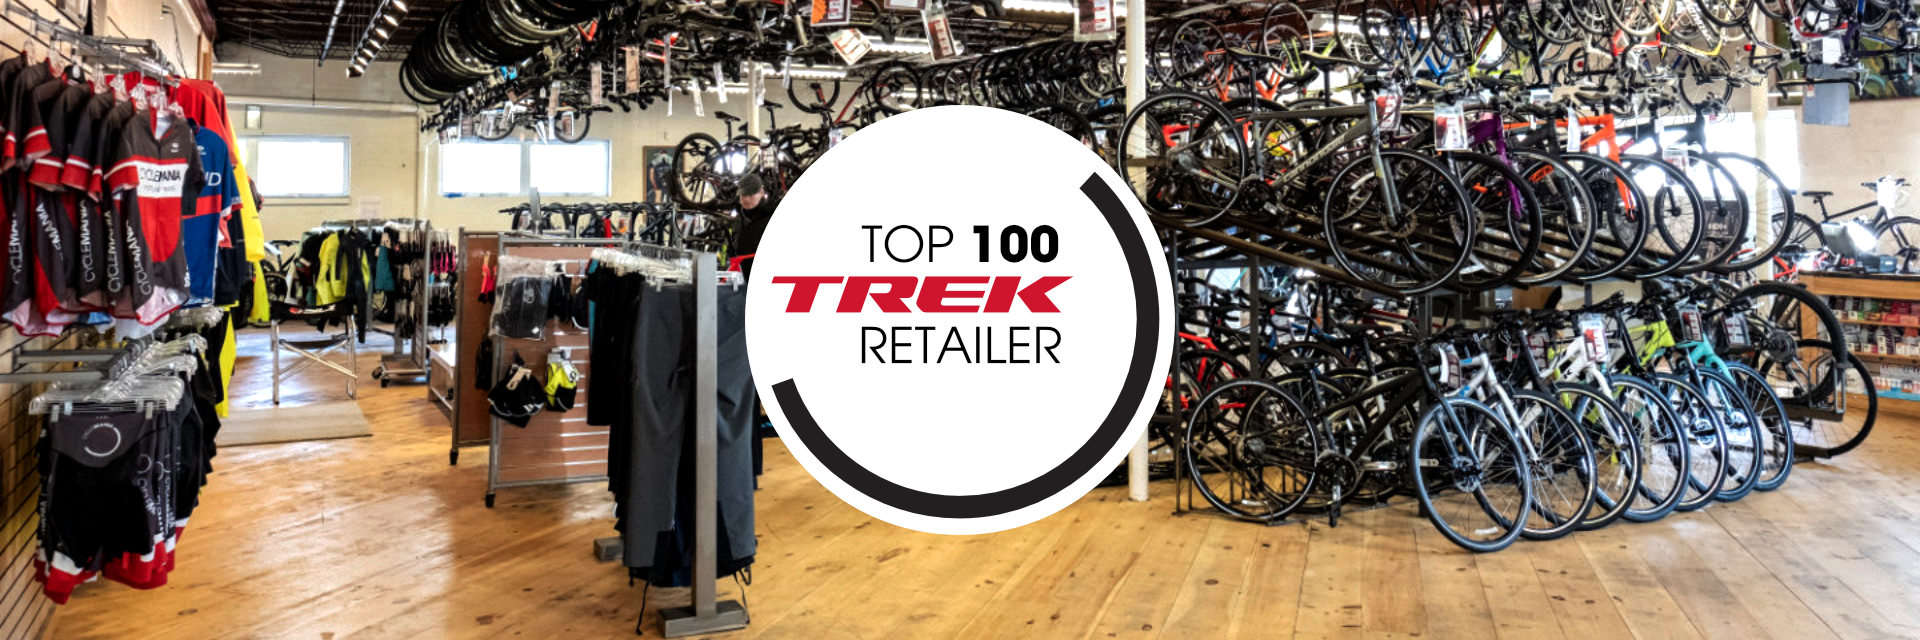 Top 100 Trek Retailer